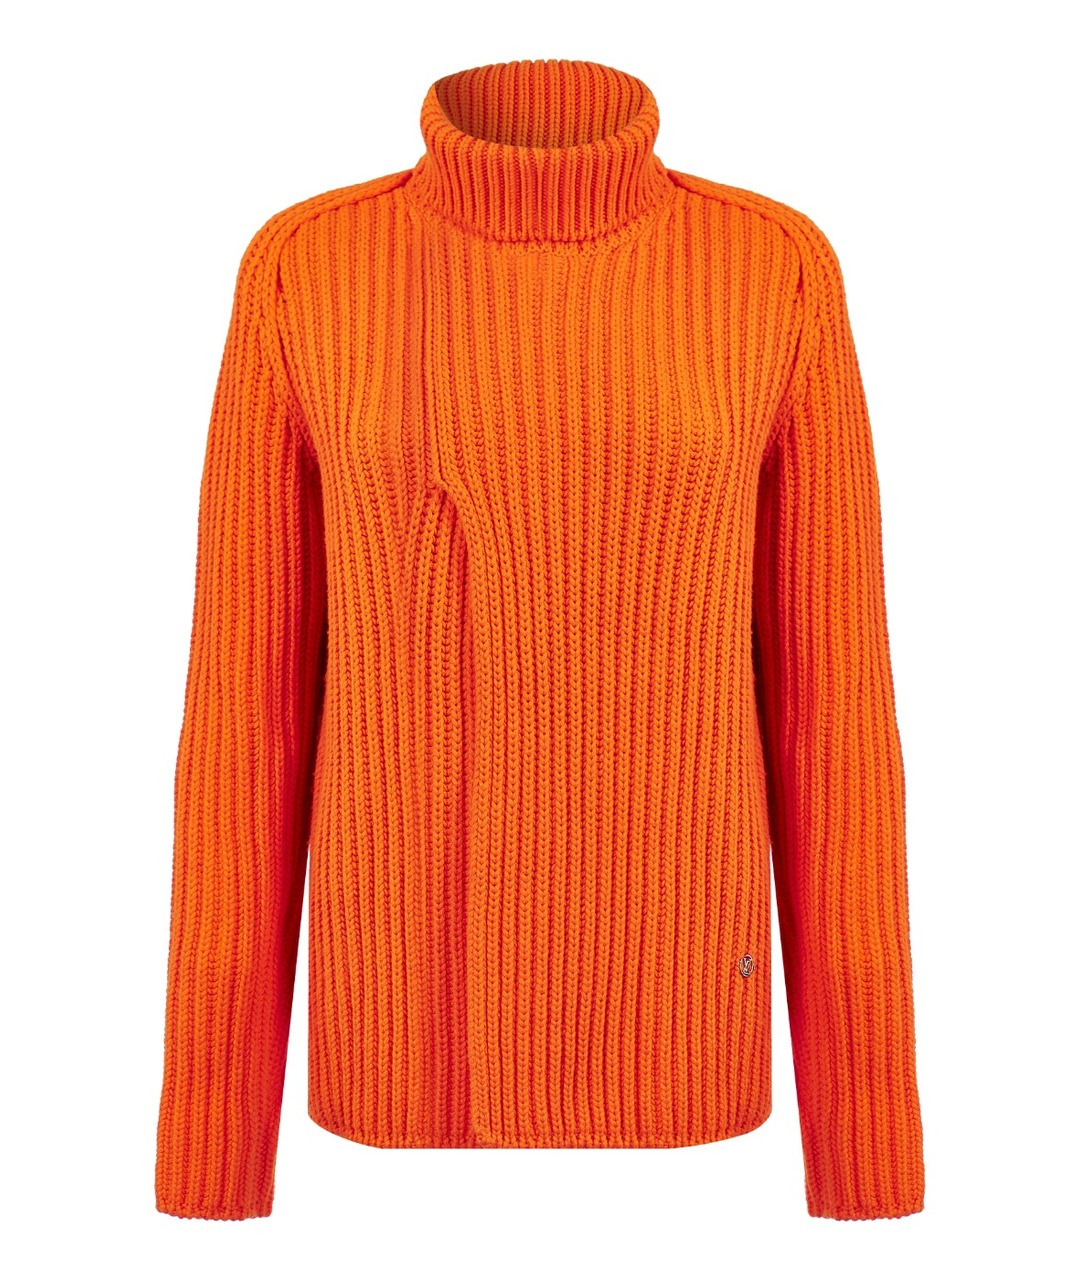 LOUIS VUITTON PRE-OWNED Оранжевый кашемировый джемпер / свитер, фото 1